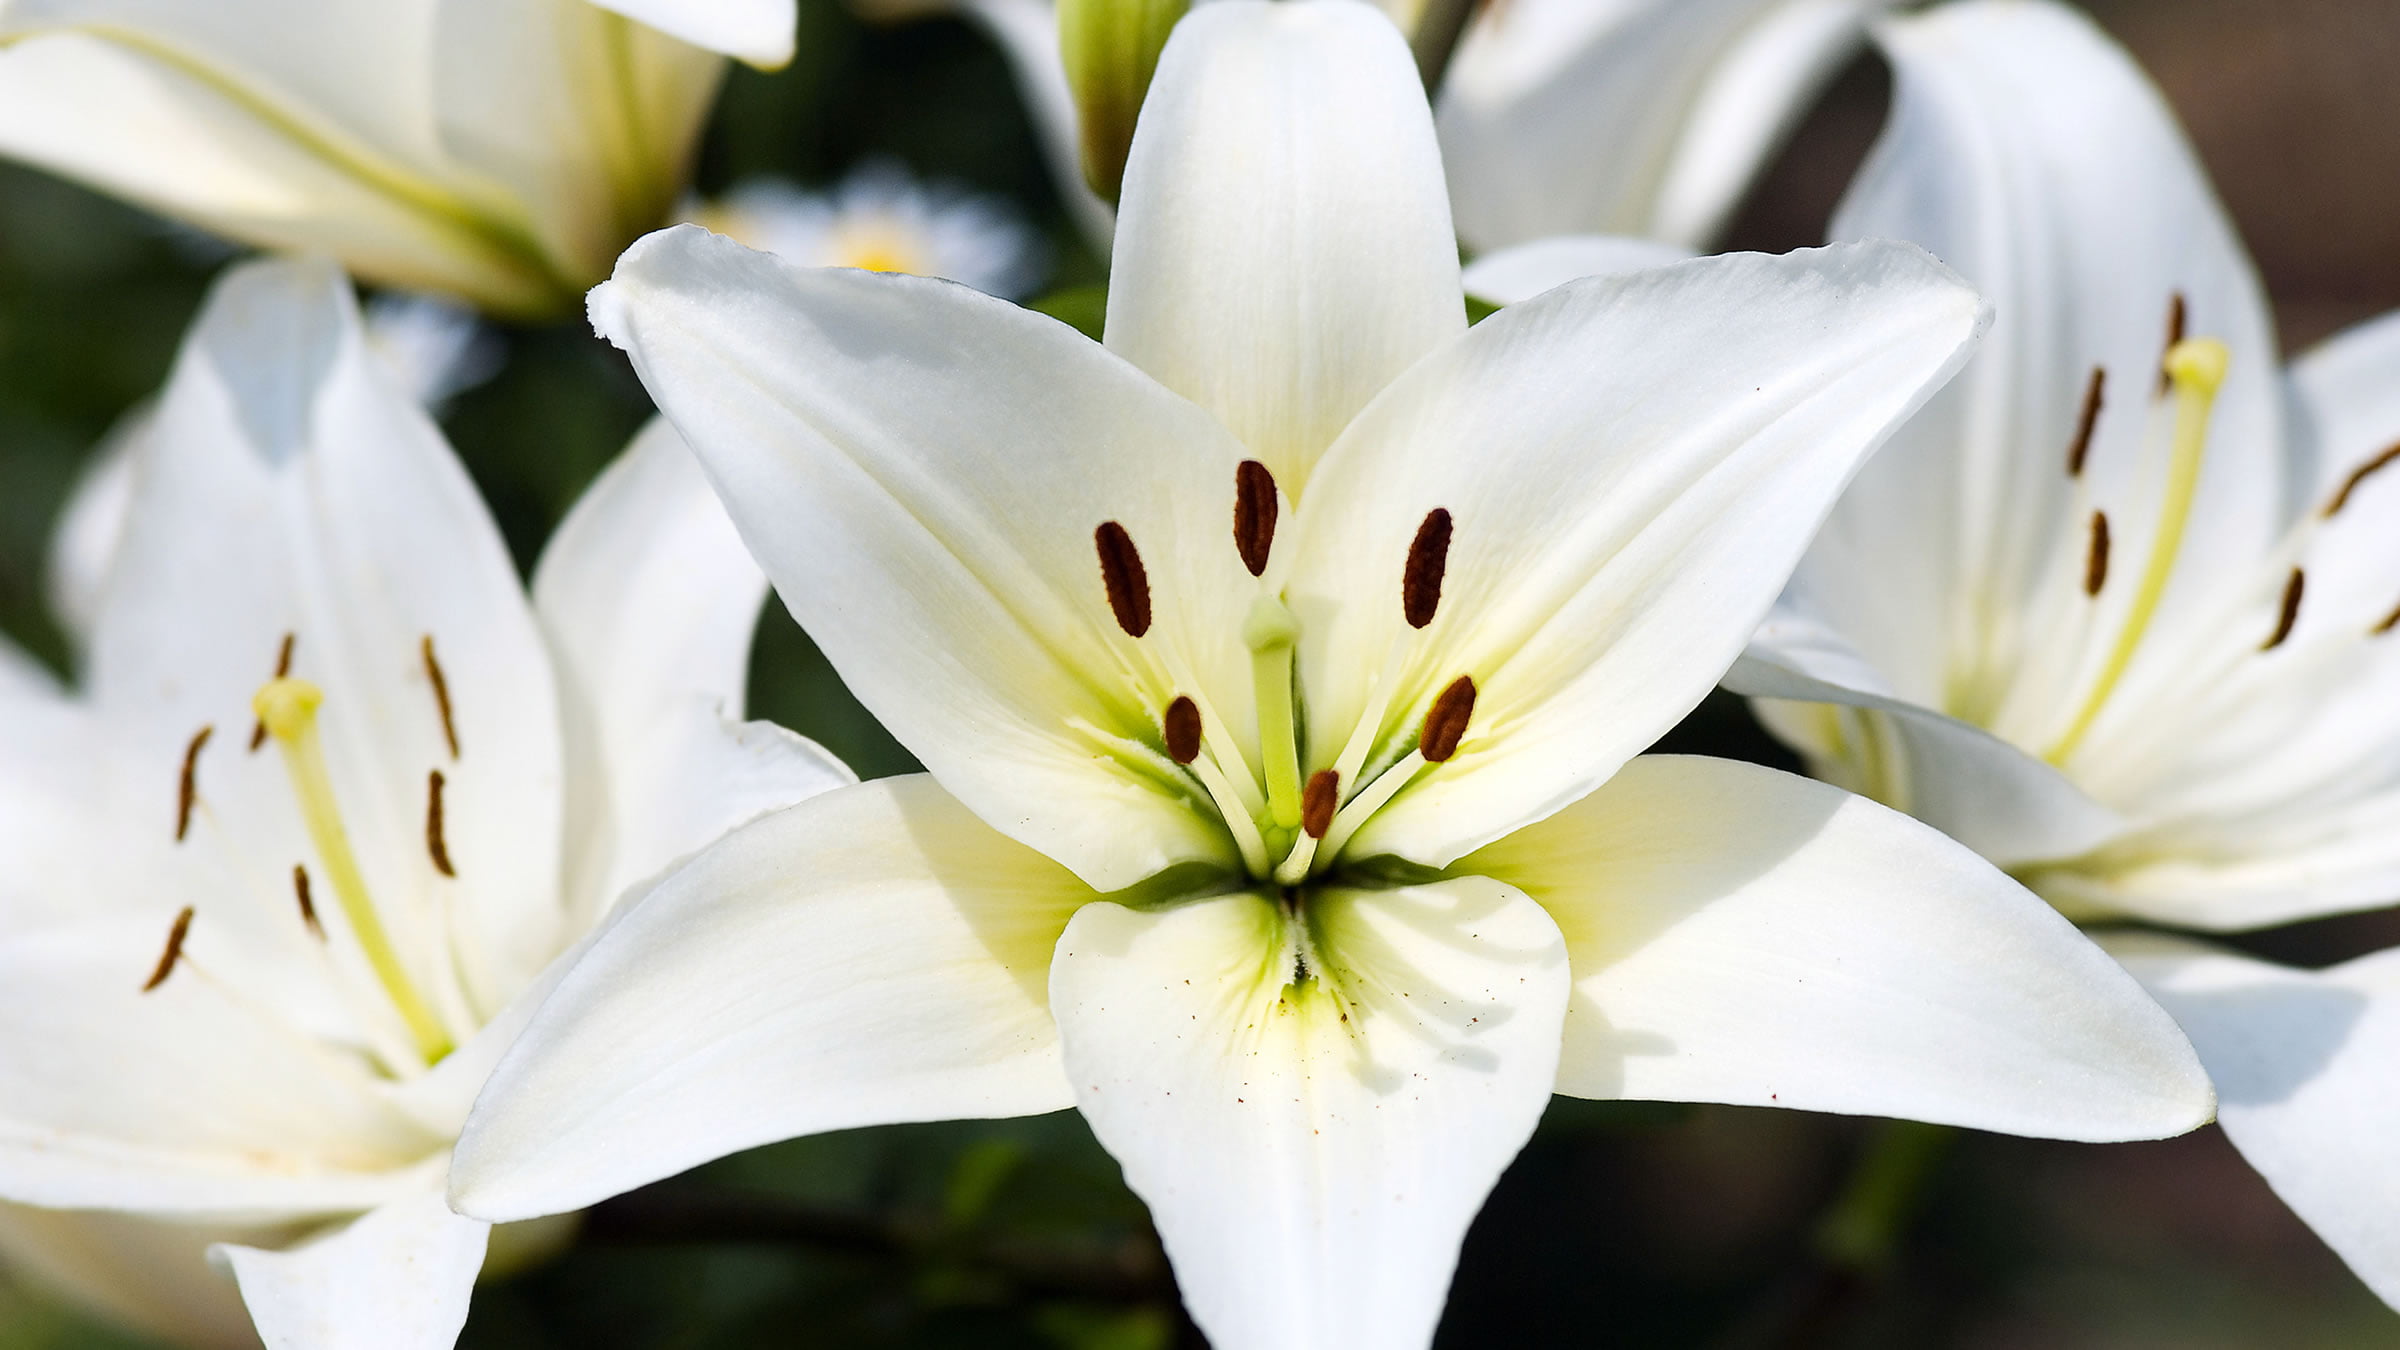 La azucena: la flor más común en los funerales ingleses